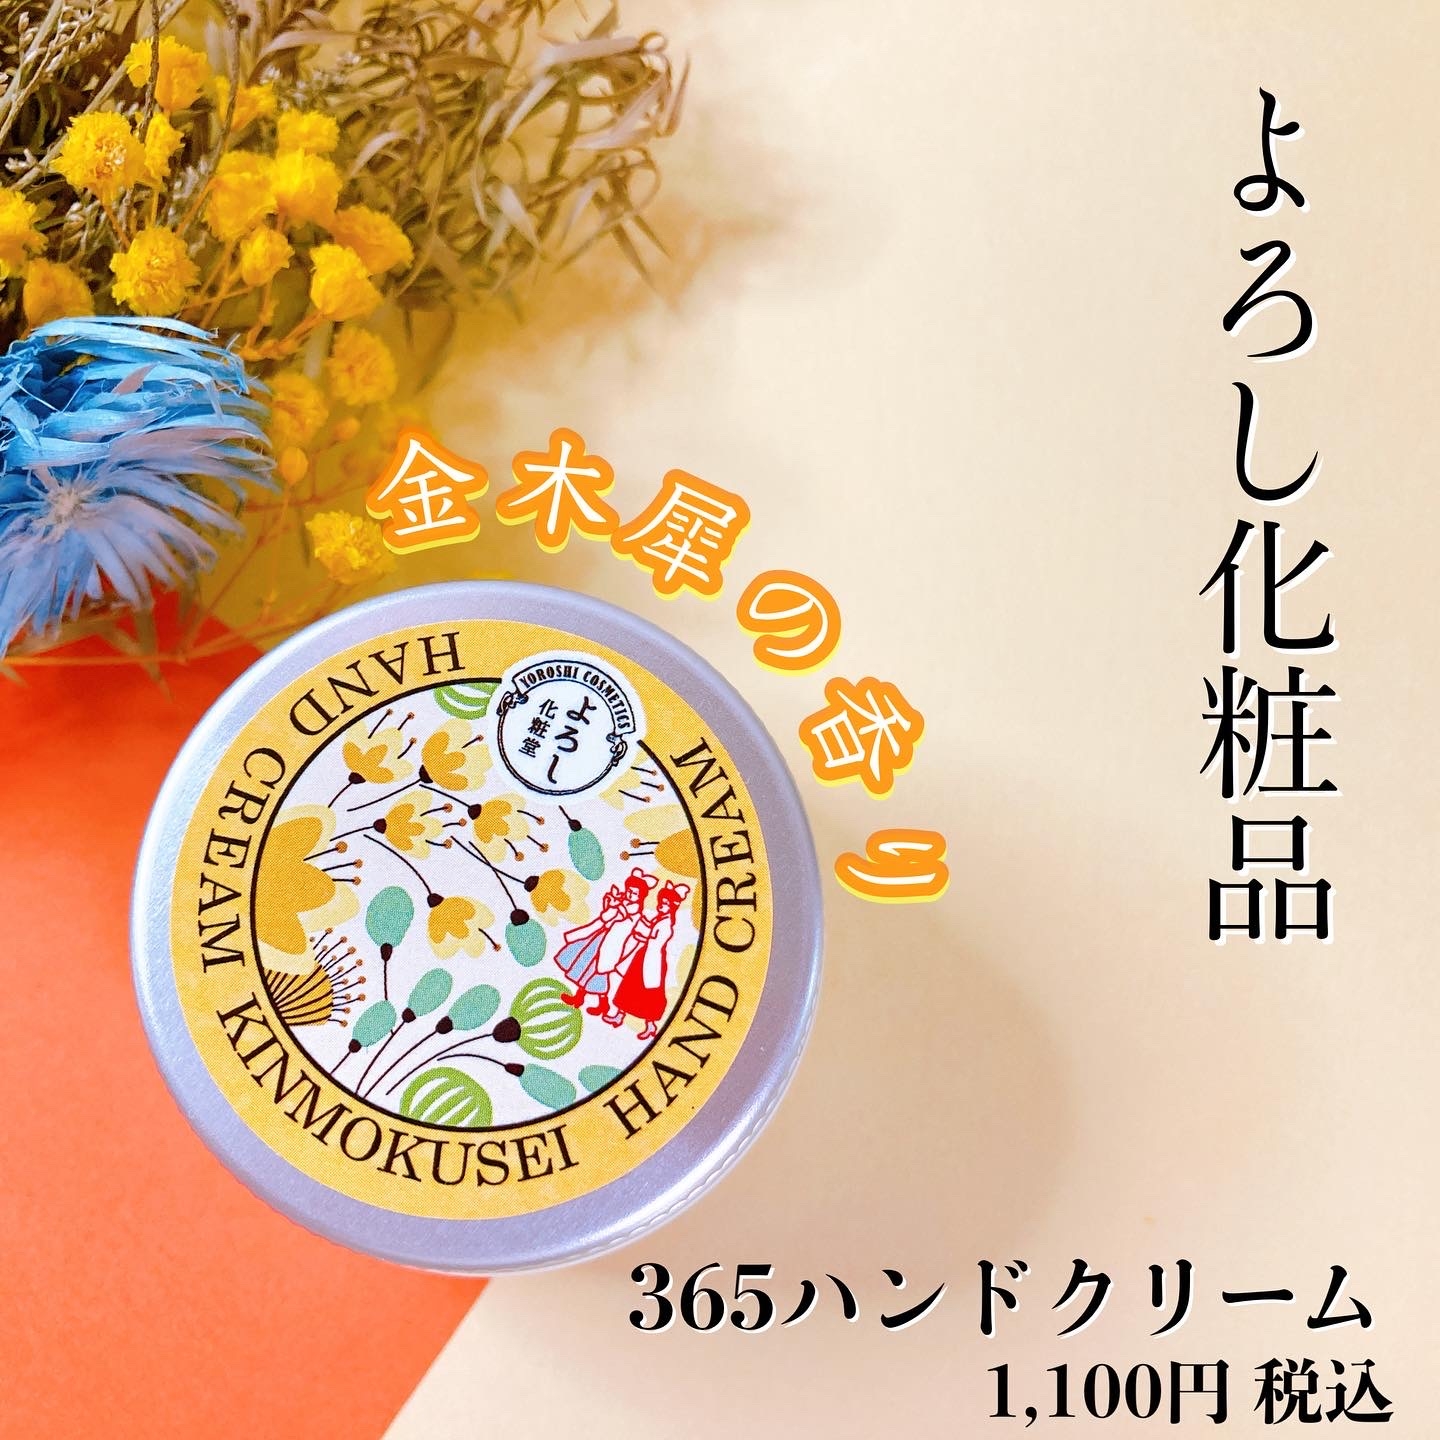 よろし化粧堂(YOROSHI COSMETICS) 365ハンドクリームの良い点・メリットに関するメグさんの口コミ画像1